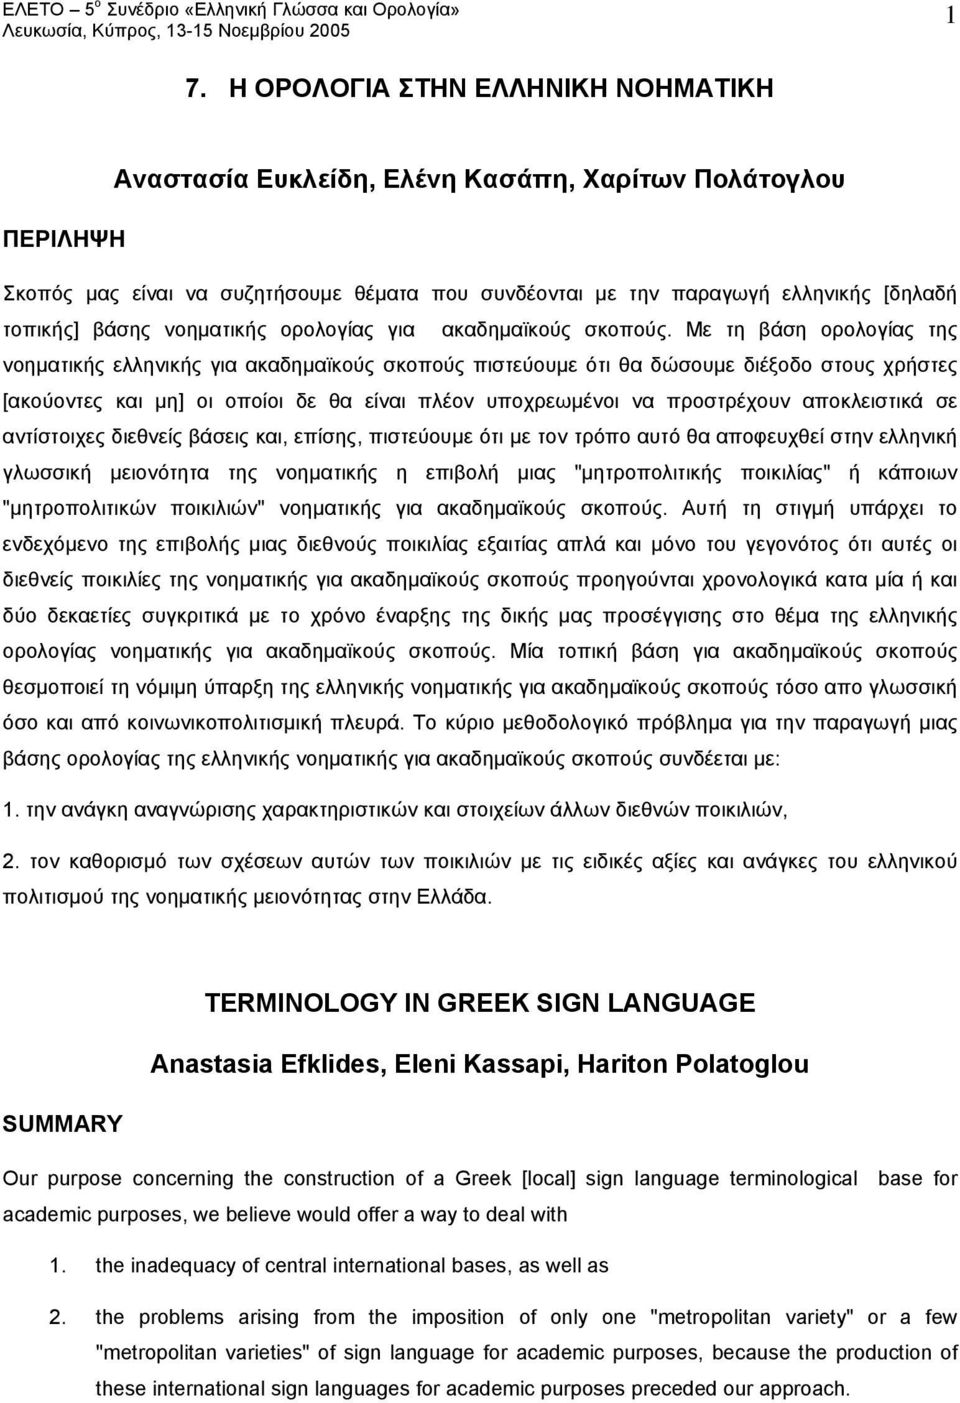 Με τη βάση ορολογίας της νοηματικής ελληνικής για ακαδημαϊκούς σκοπούς πιστεύουμε ότι θα δώσουμε διέξοδο στους χρήστες [ακούοντες και μη] οι οποίοι δε θα είναι πλέον υποχρεωμένοι να προστρέχουν